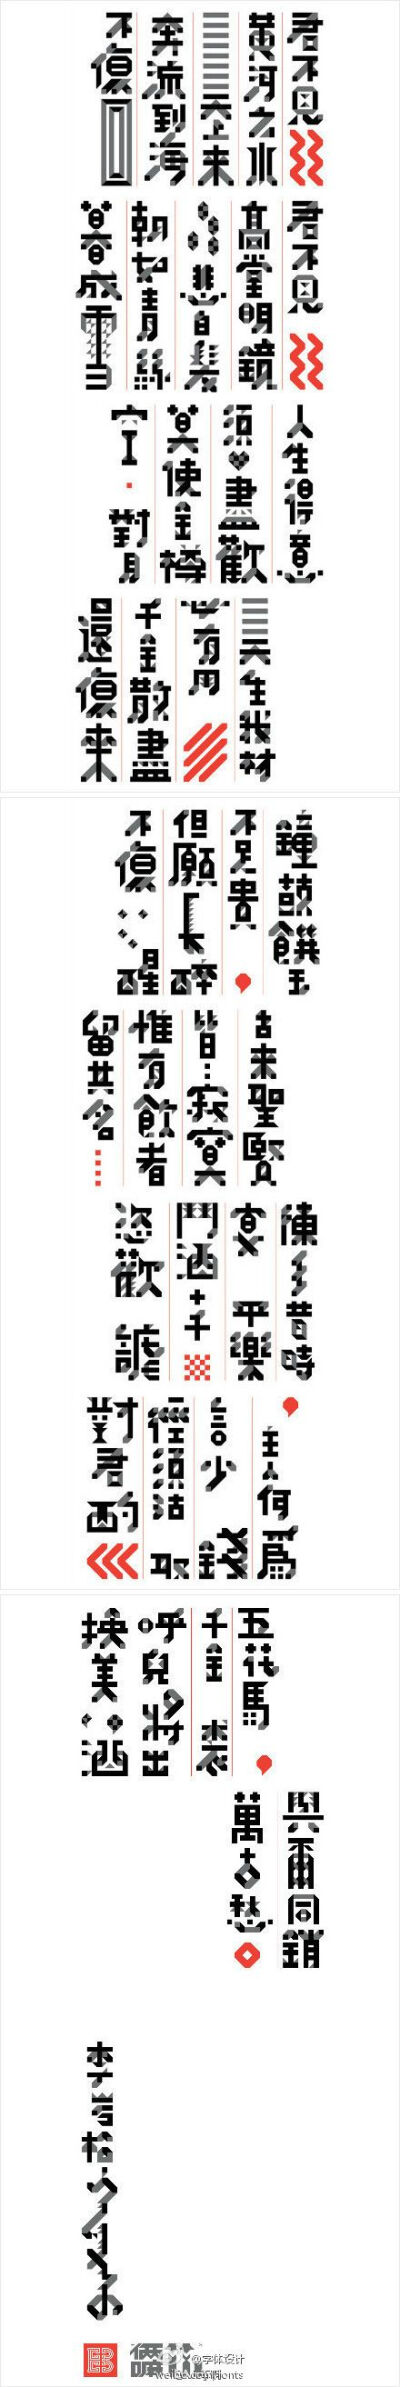 创意中文 字体 设计 将进酒